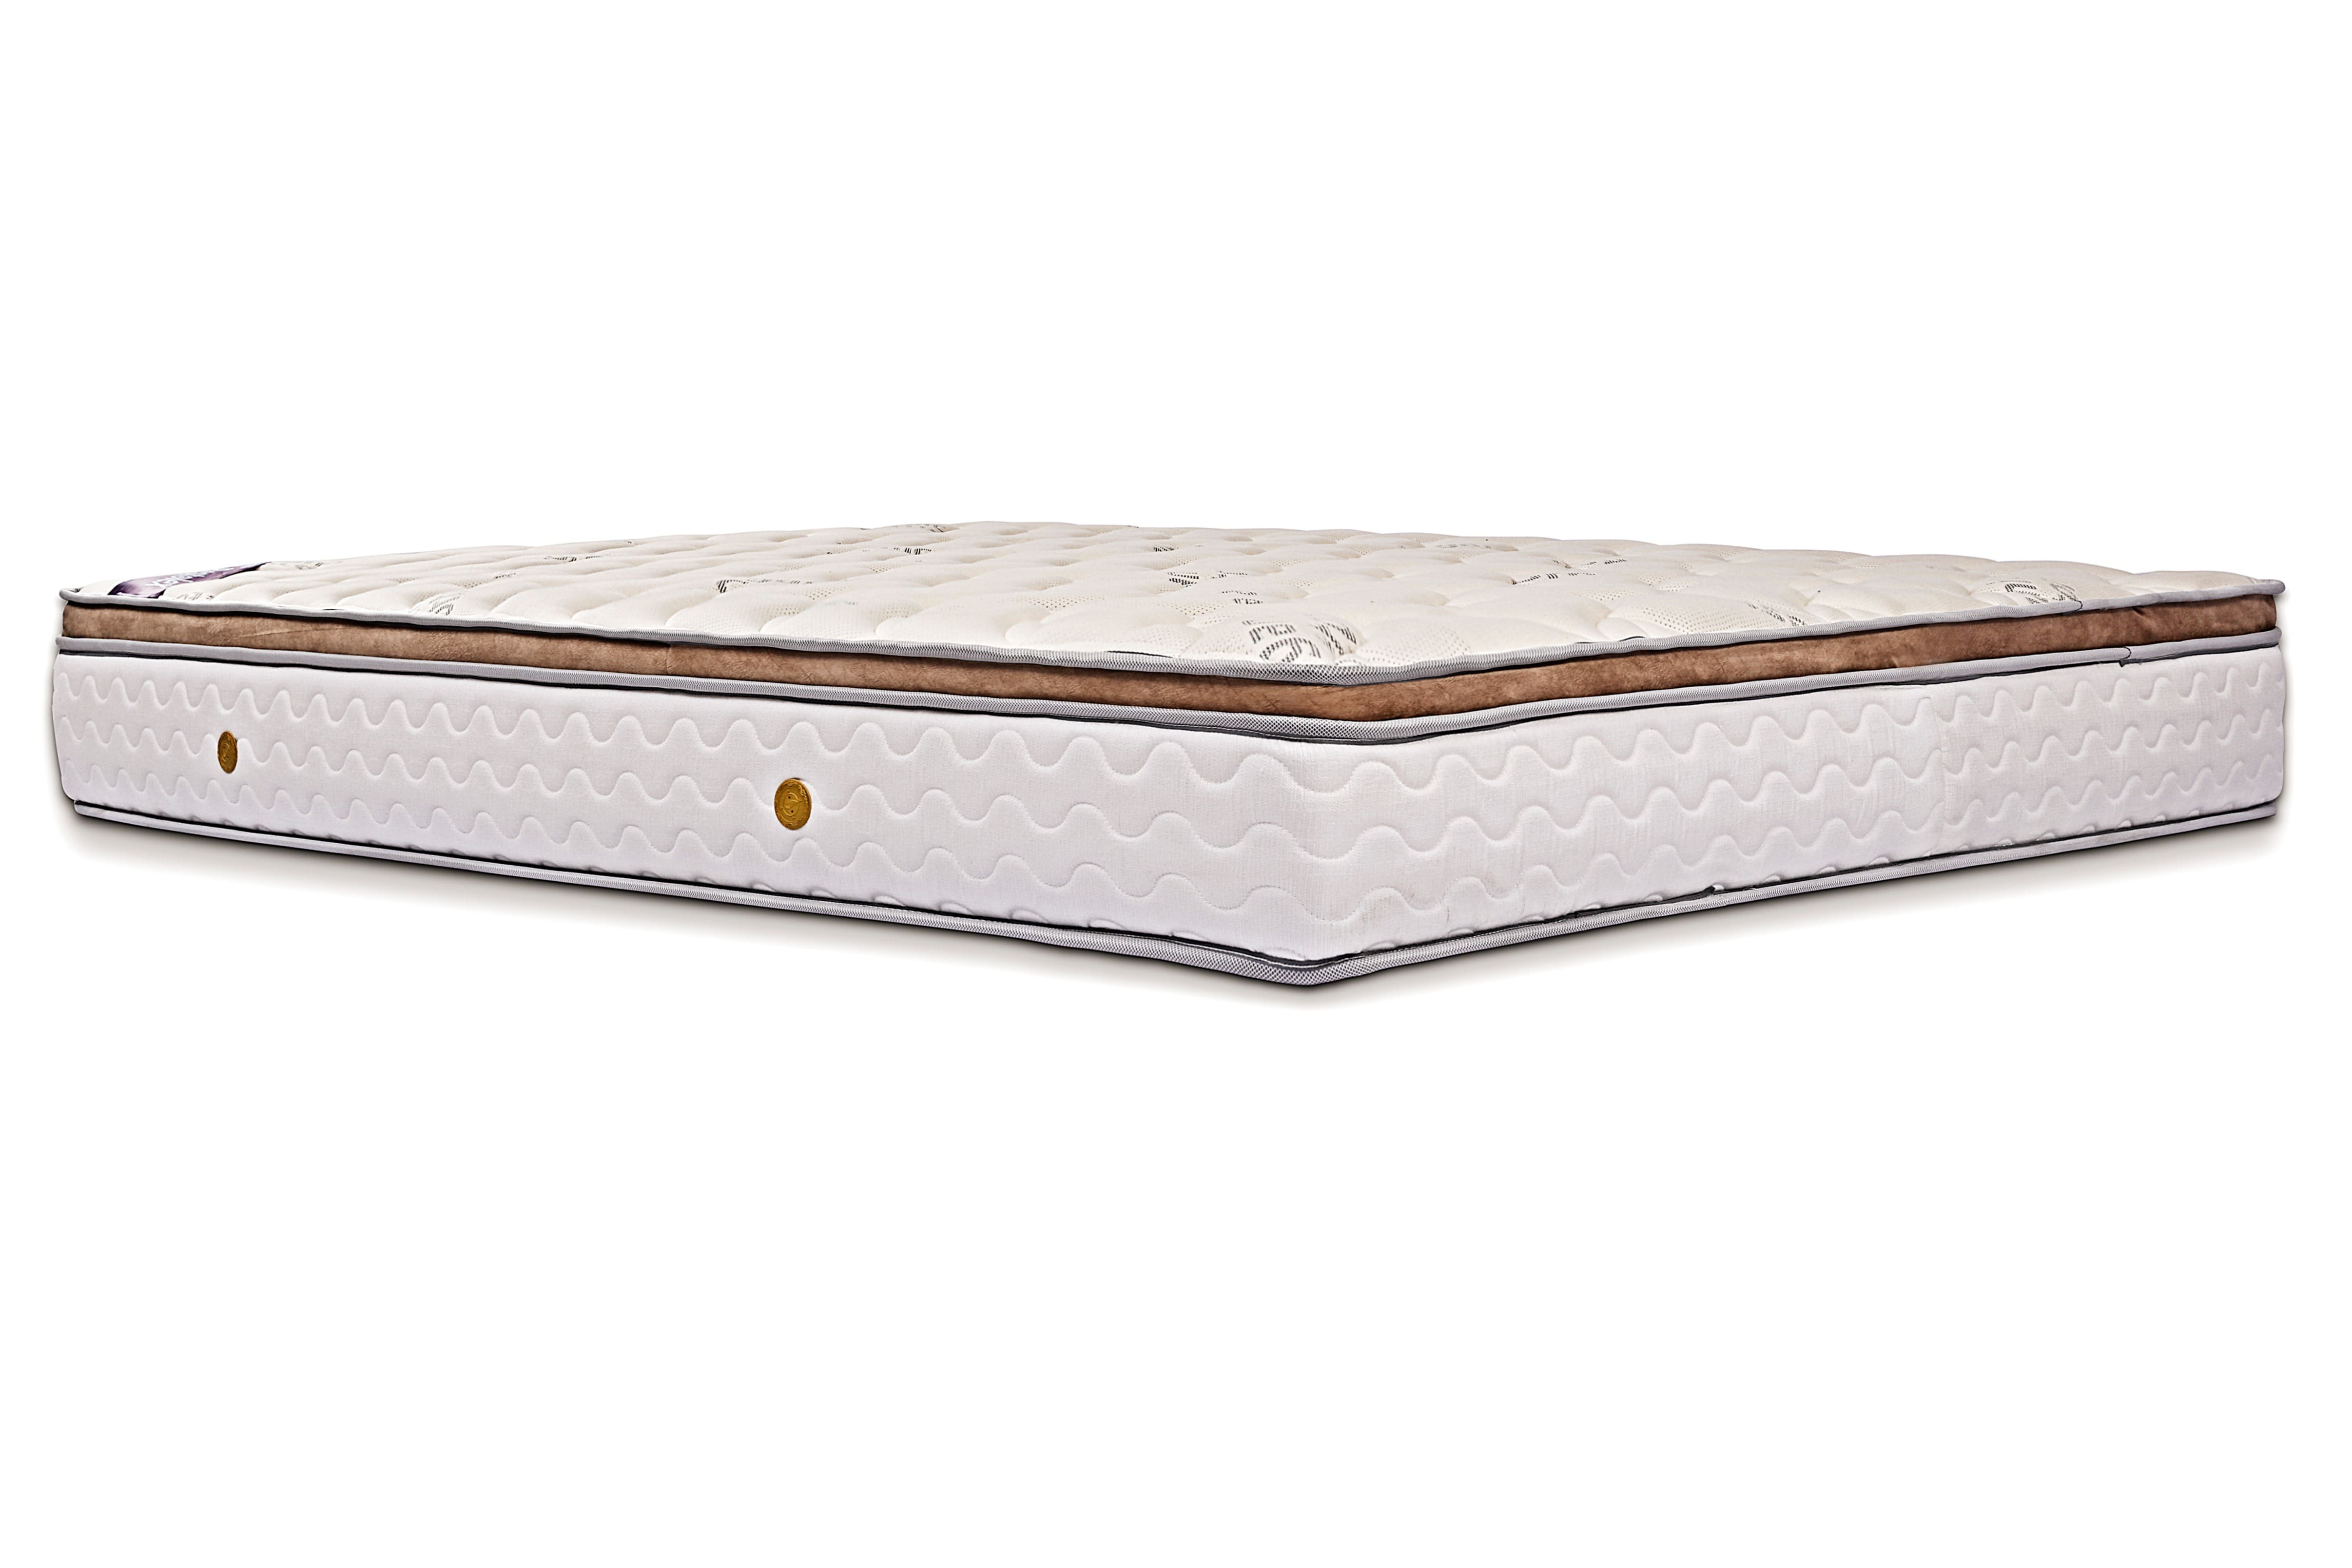 restolex 4 inch mattress